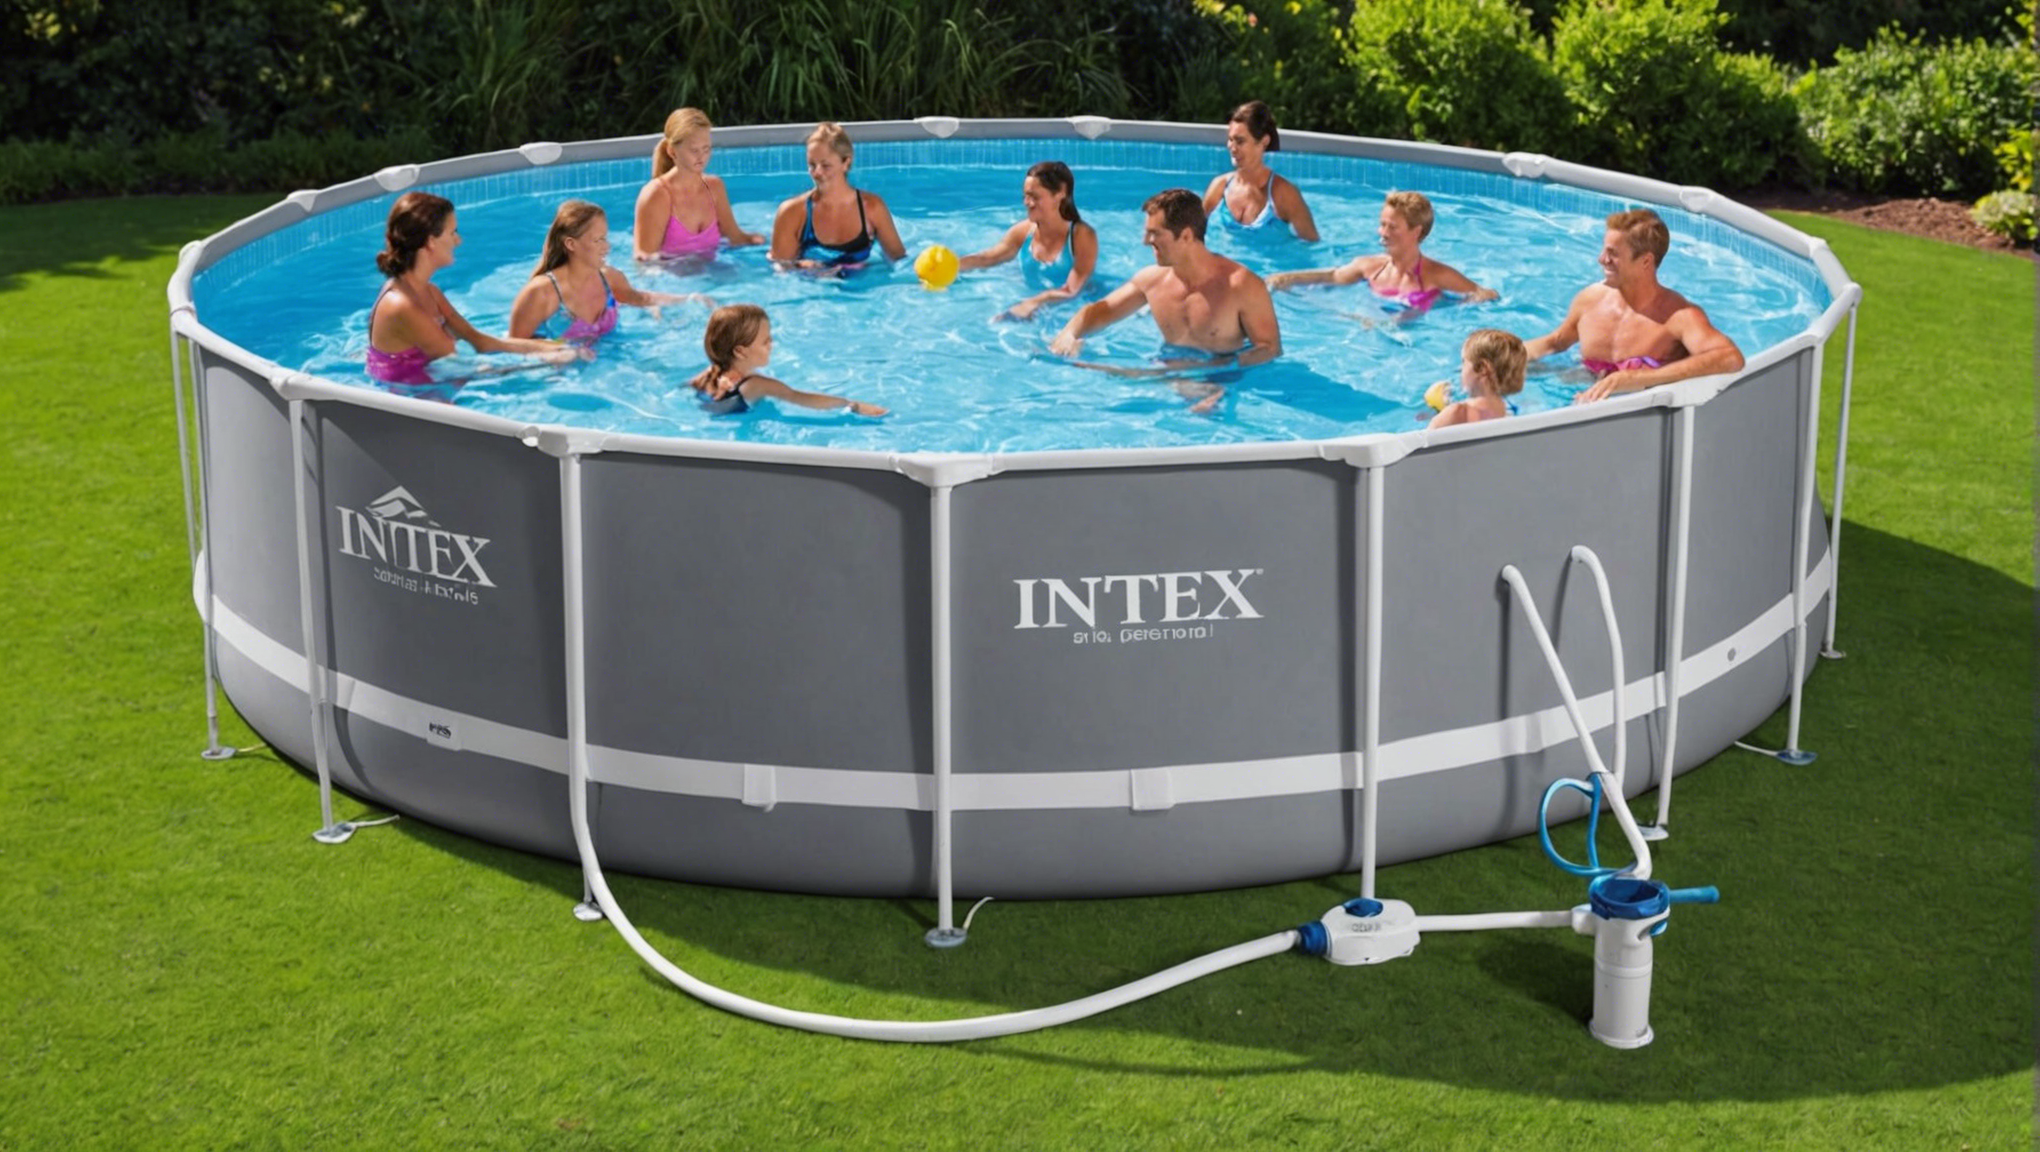 découvrez les avantages d'opter pour une piscine intex pour votre jardin et profitez d'un espace de détente et de loisirs à domicile. qualité, facilité d'installation et plaisir garantis !